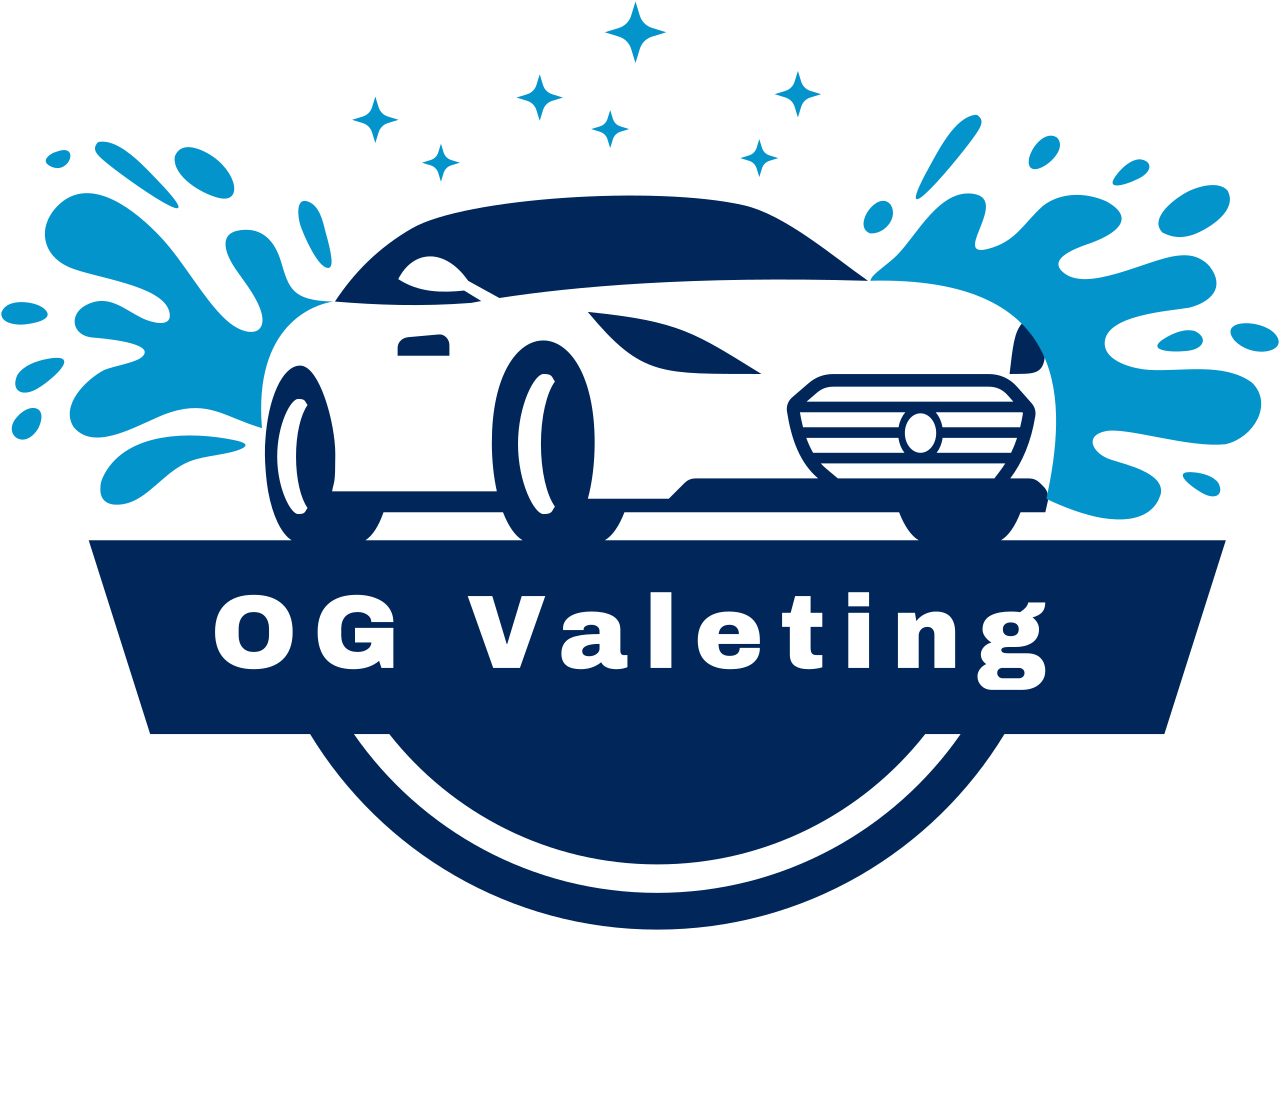 OG Valeting's logo